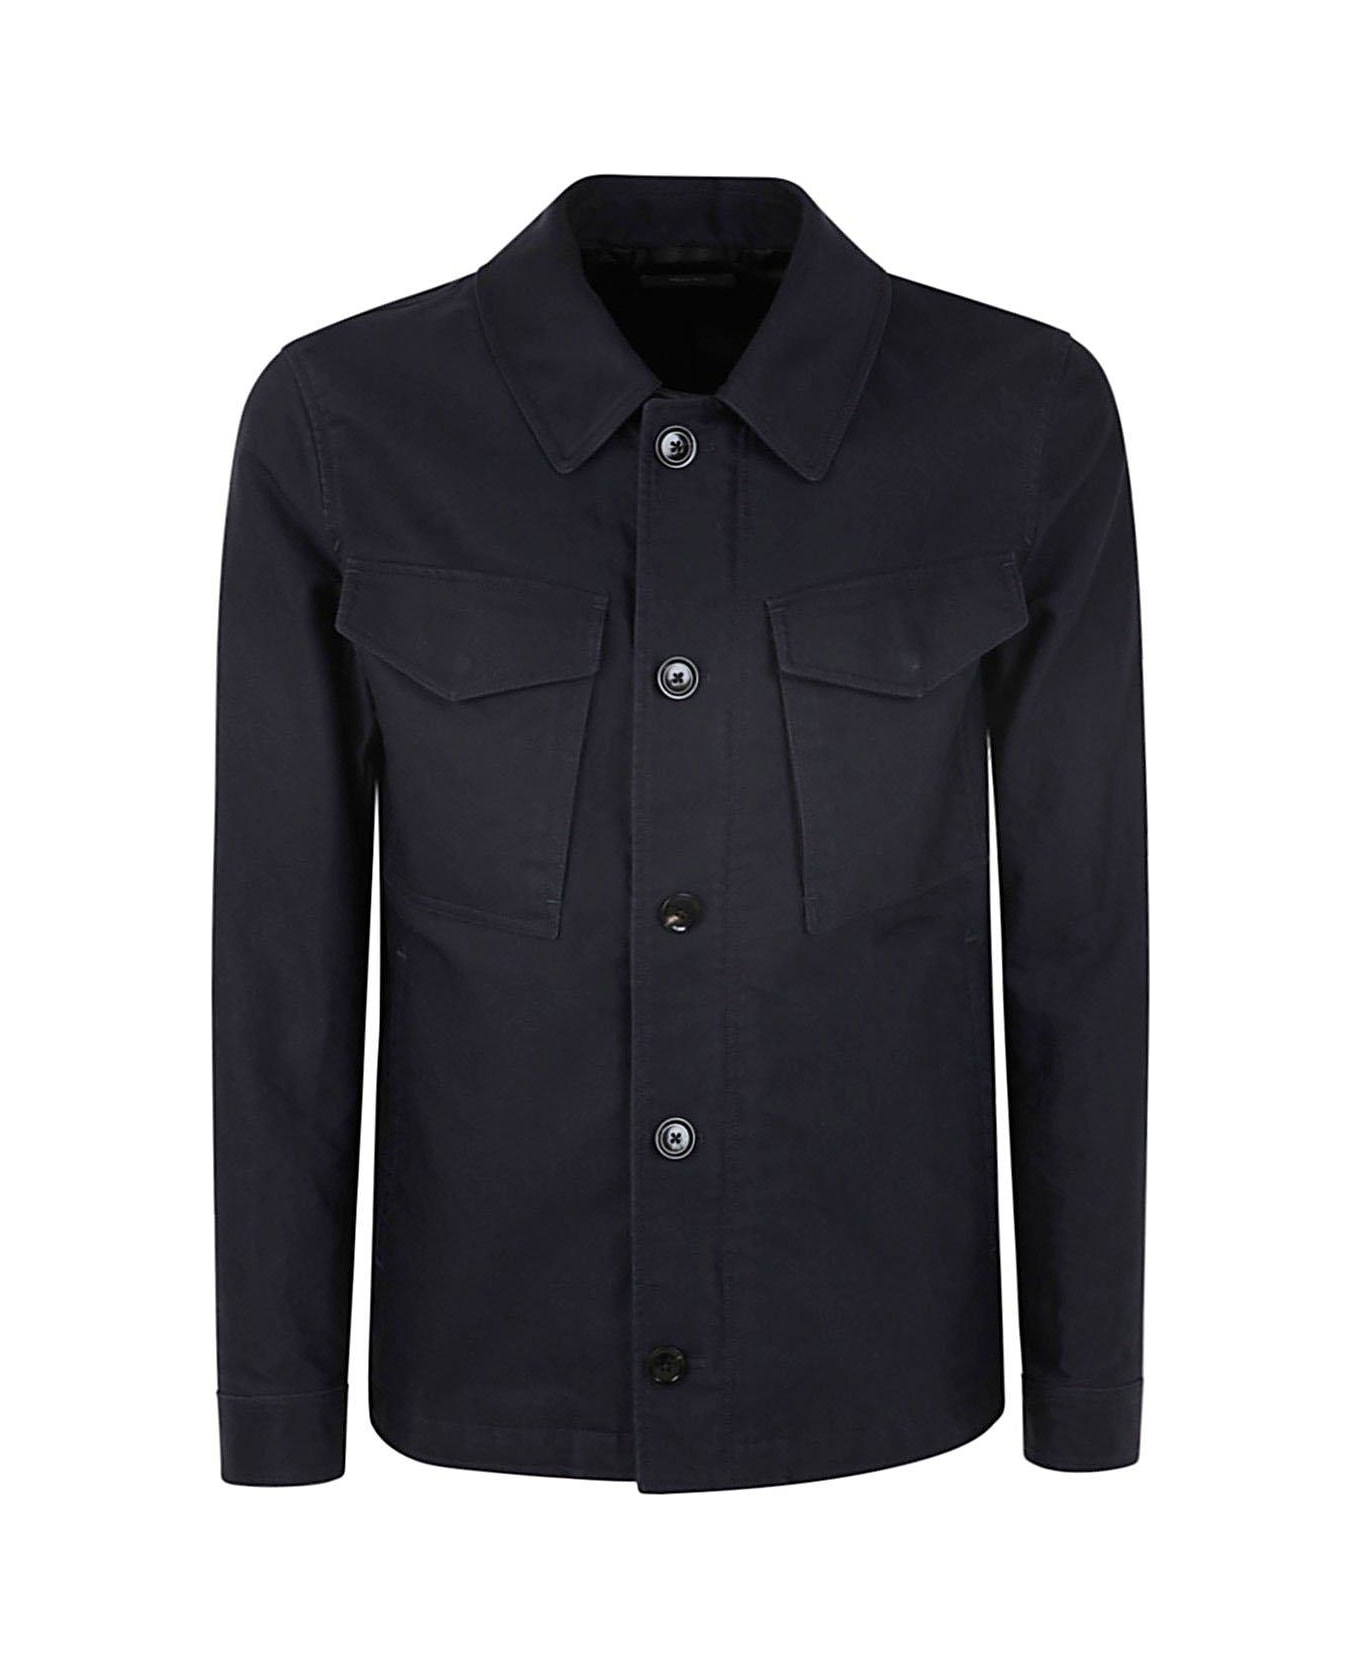 Tom Ford Chest Pocket Shirt Jacket - Blu Navy